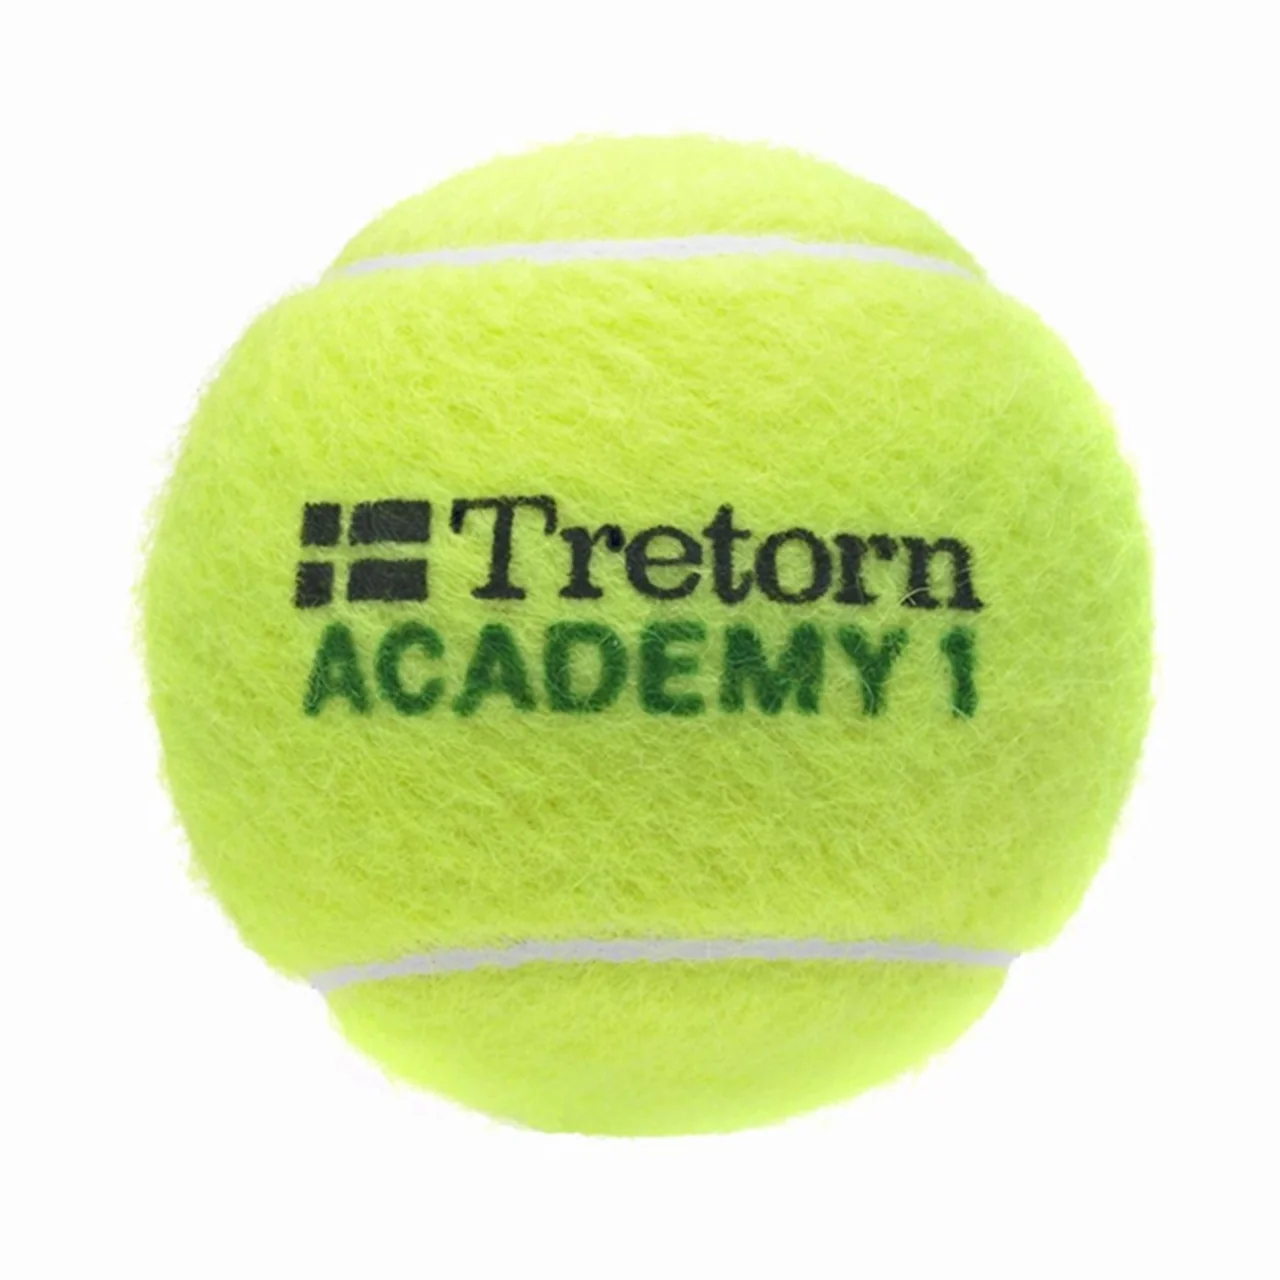 Tretorn Academy Stage 1. 72 baller